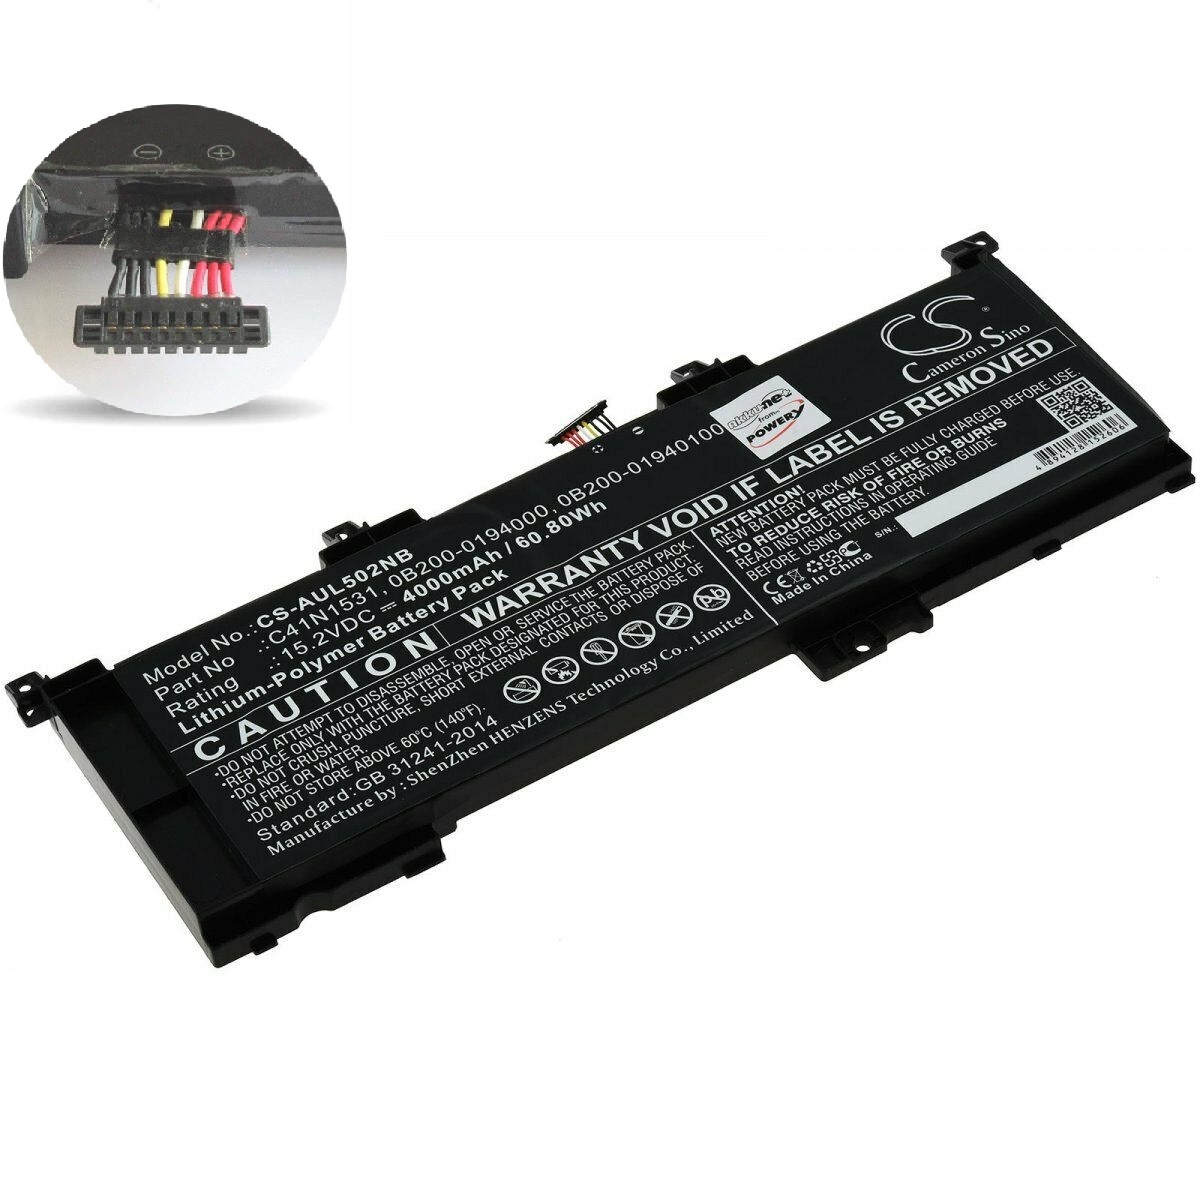 Batería para Asus GL502VY-DS71 GL502VY-DS74 Rog GL502VS GL502VT Rog Strix GL502VS C41N1531 0B200-01940100 (compatible)